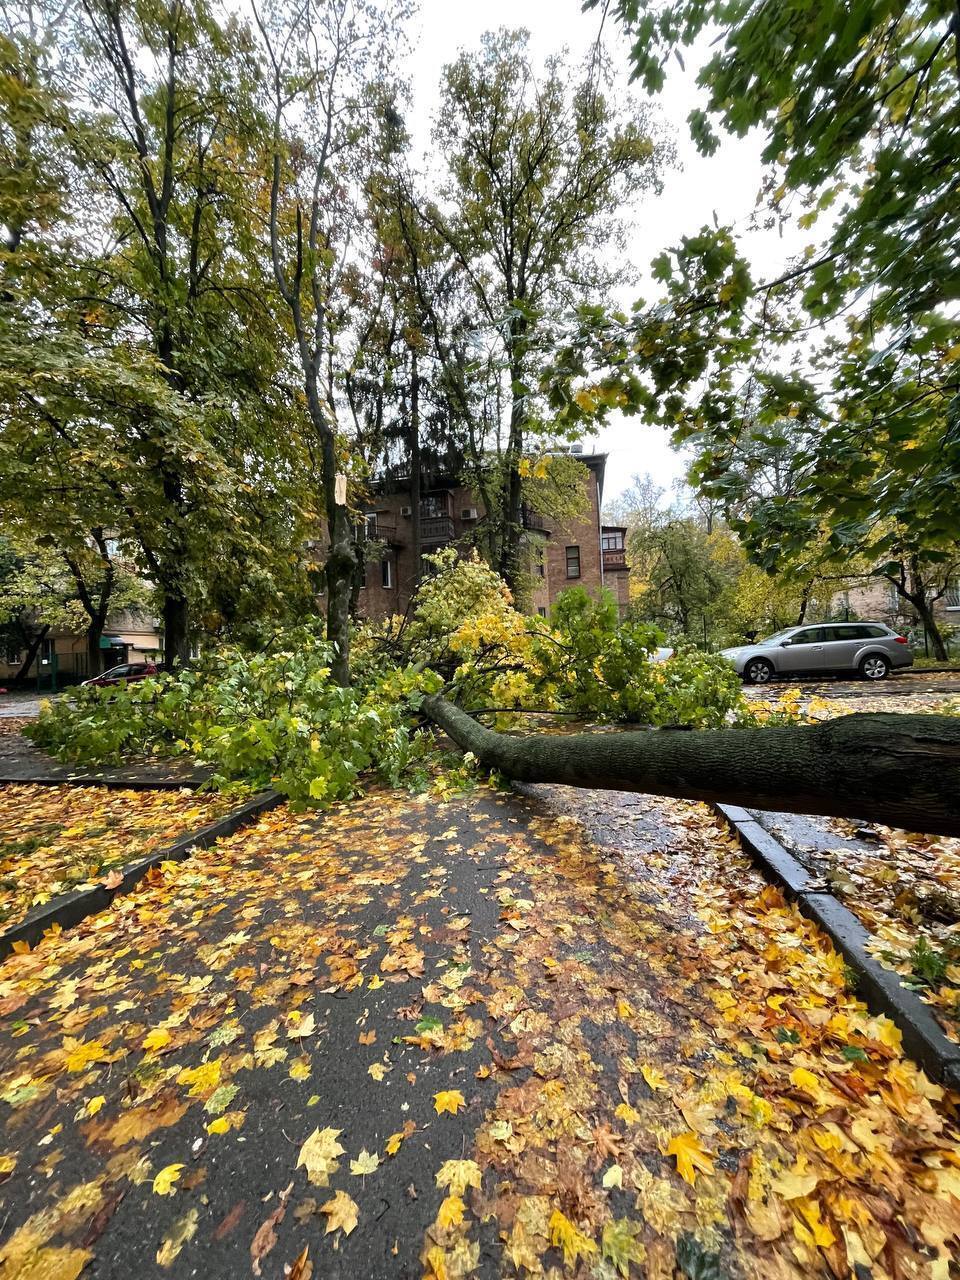 Из-за непогоды в Киеве упало дерево, повредив автомобиль и провода электросети